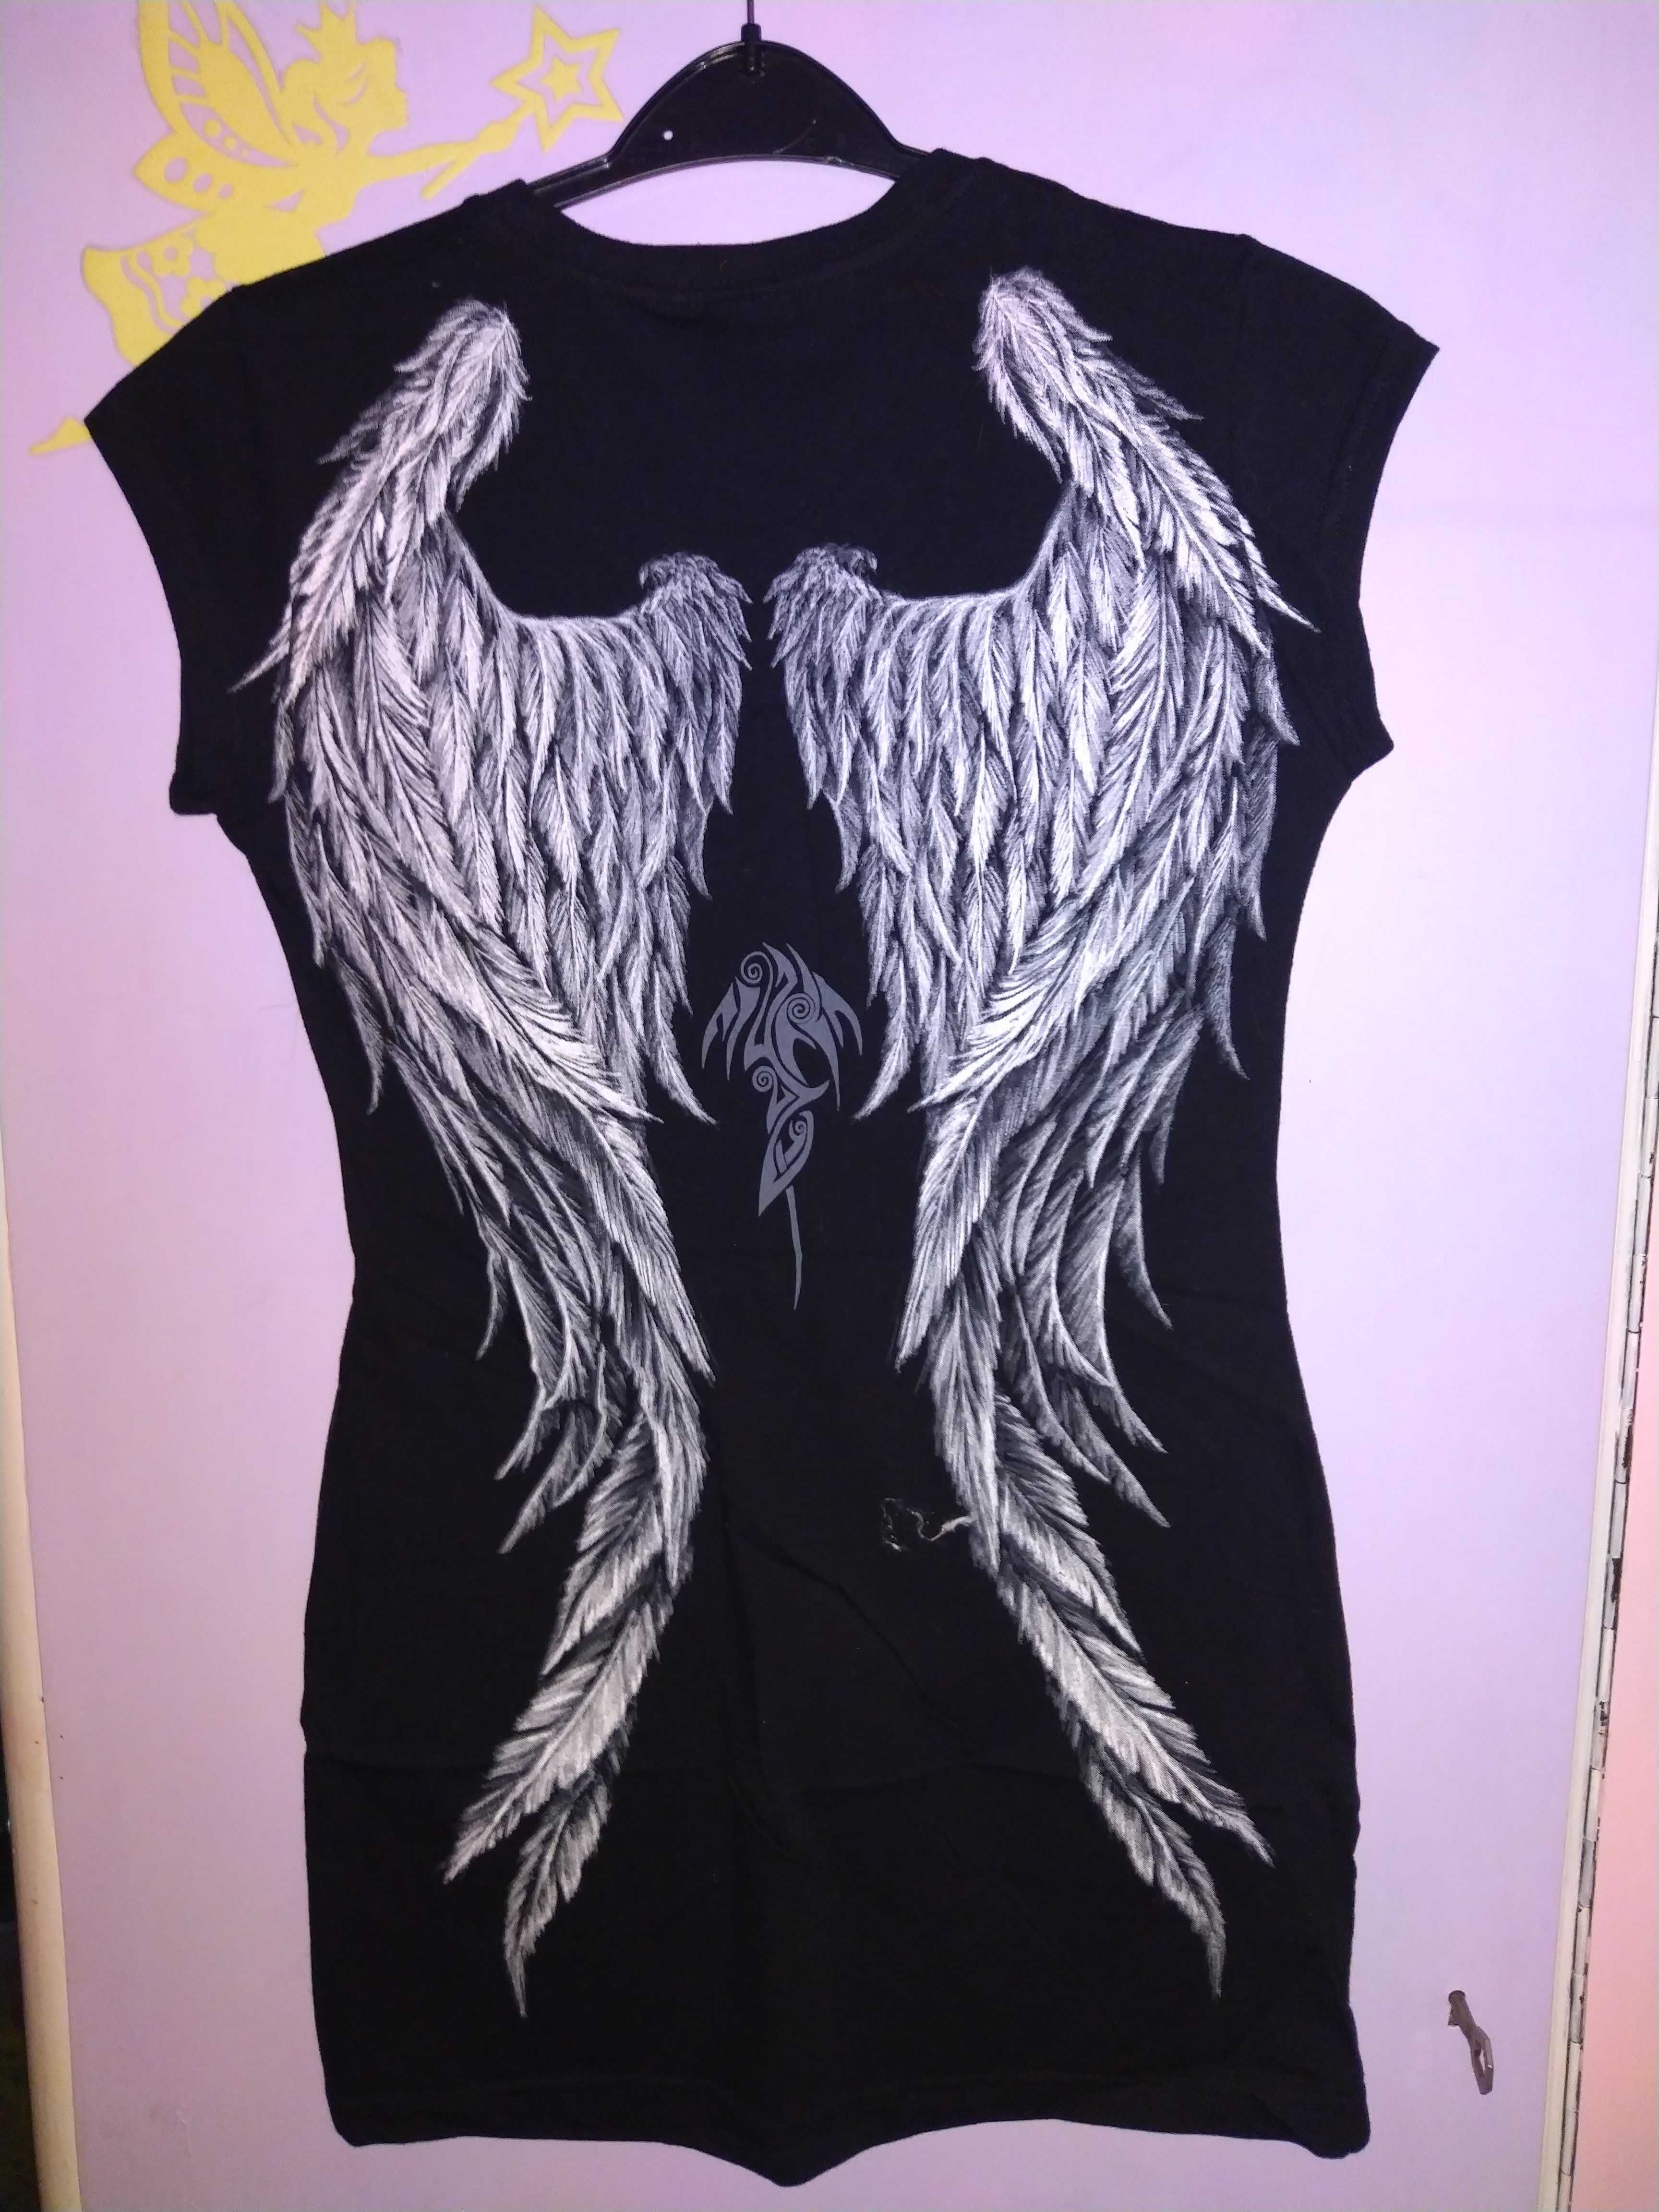 Zestaw Goth angel koszulka i sukienka plus biżu